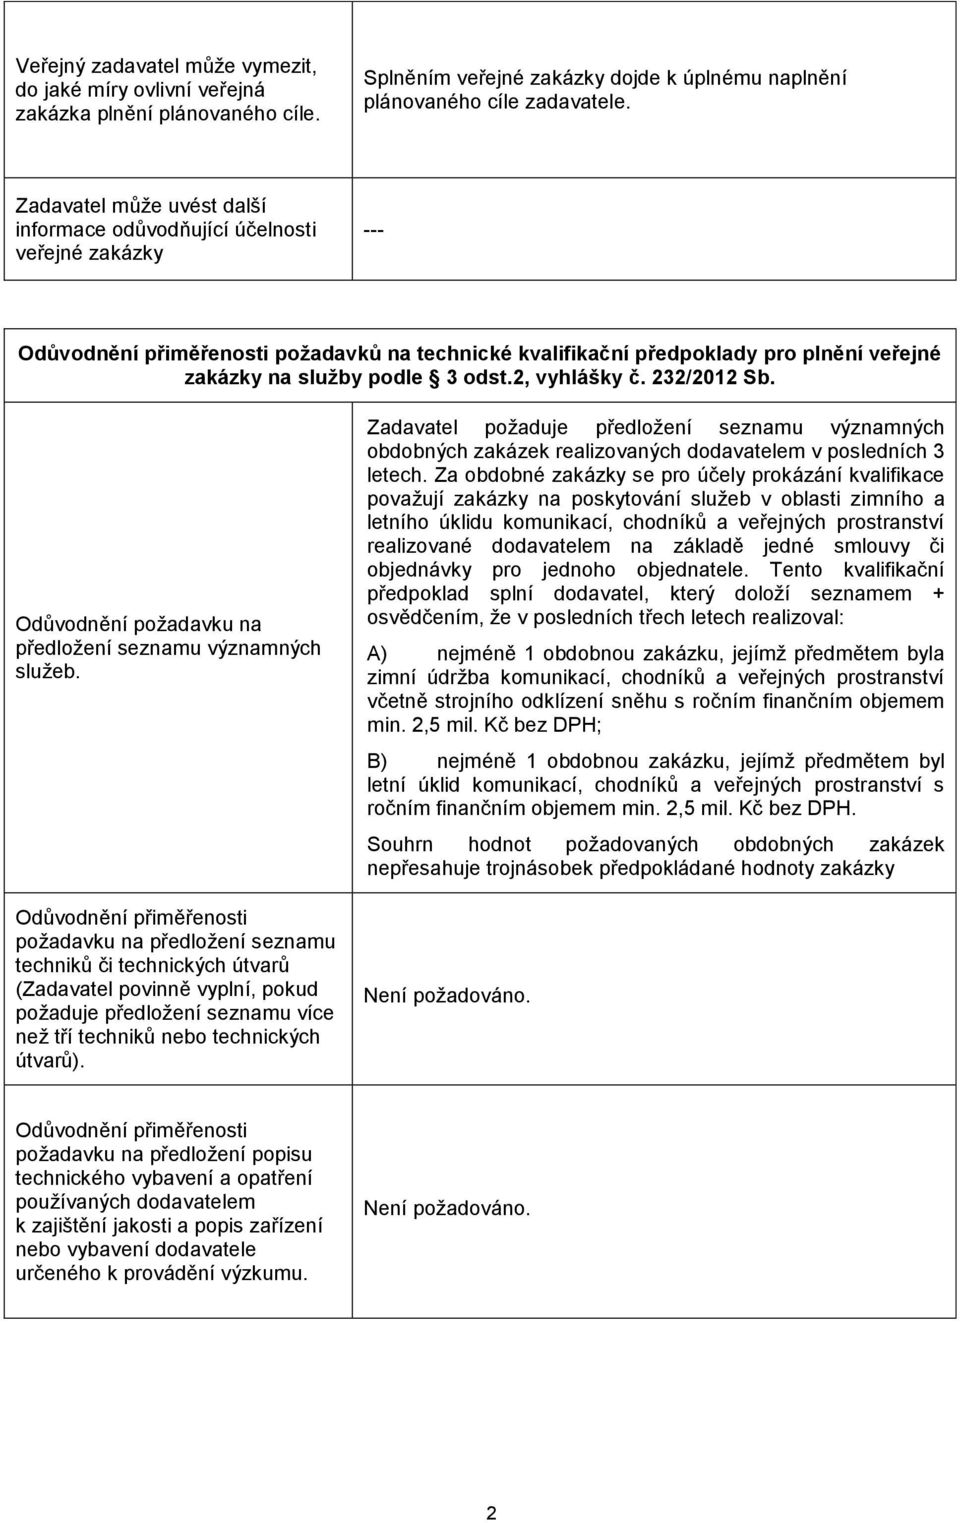 232/2012 Sb. Odůvodnění požadavku na předložení seznamu významných služeb.